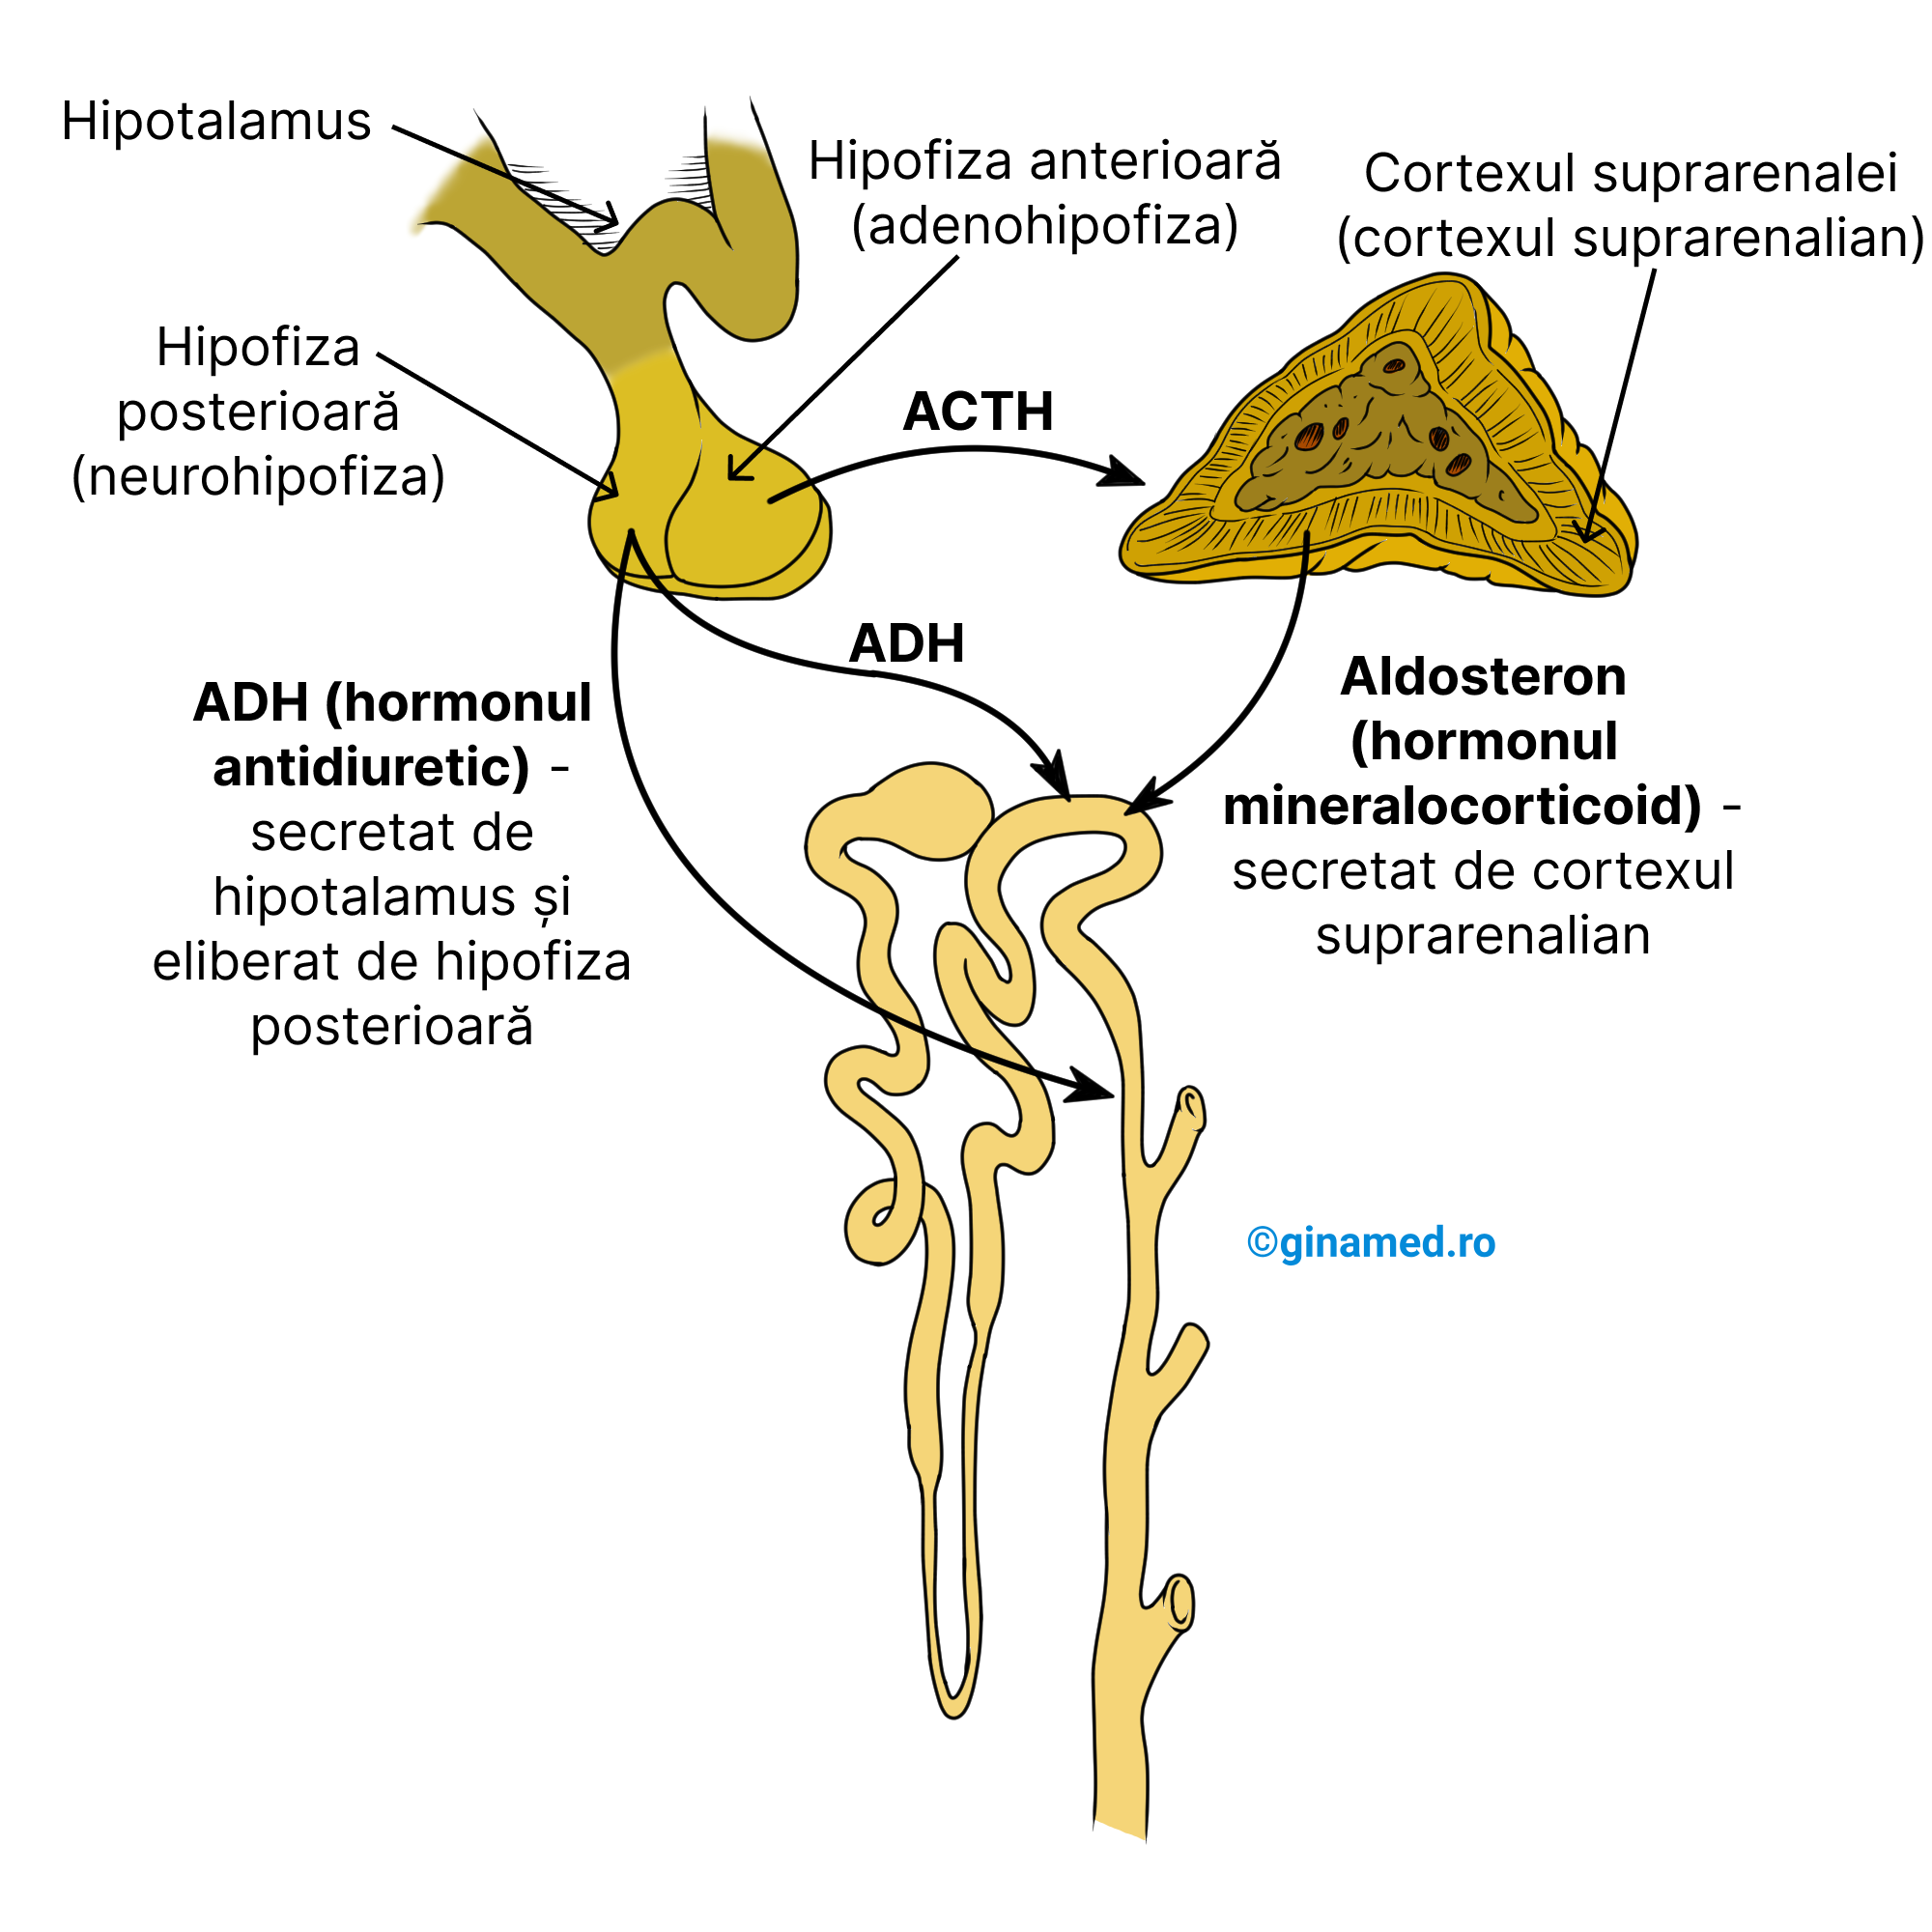 Controlul reabsorbției de apă în nefron sub acțiunea ADH și aldosteron.